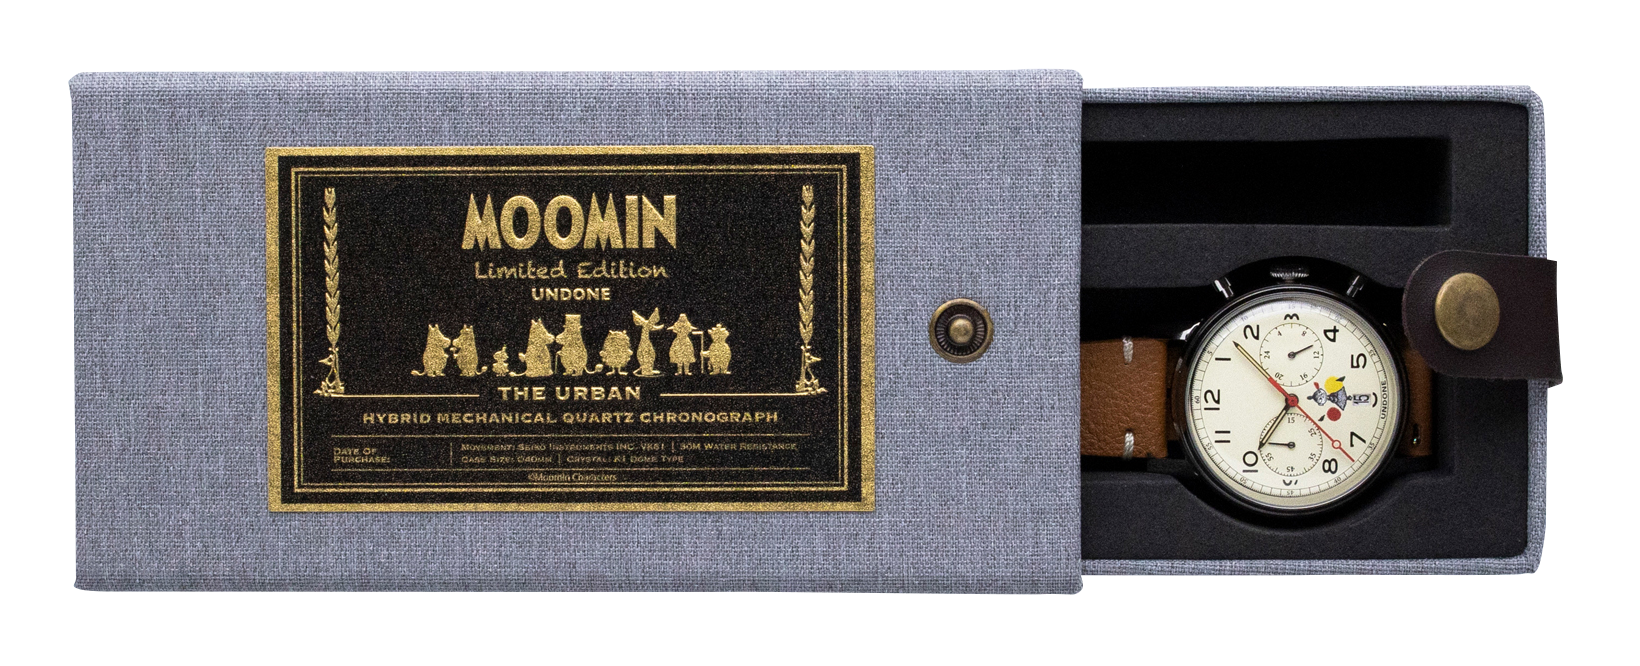 UNDONE ムーミン オリジナルラベル付き特別BOX